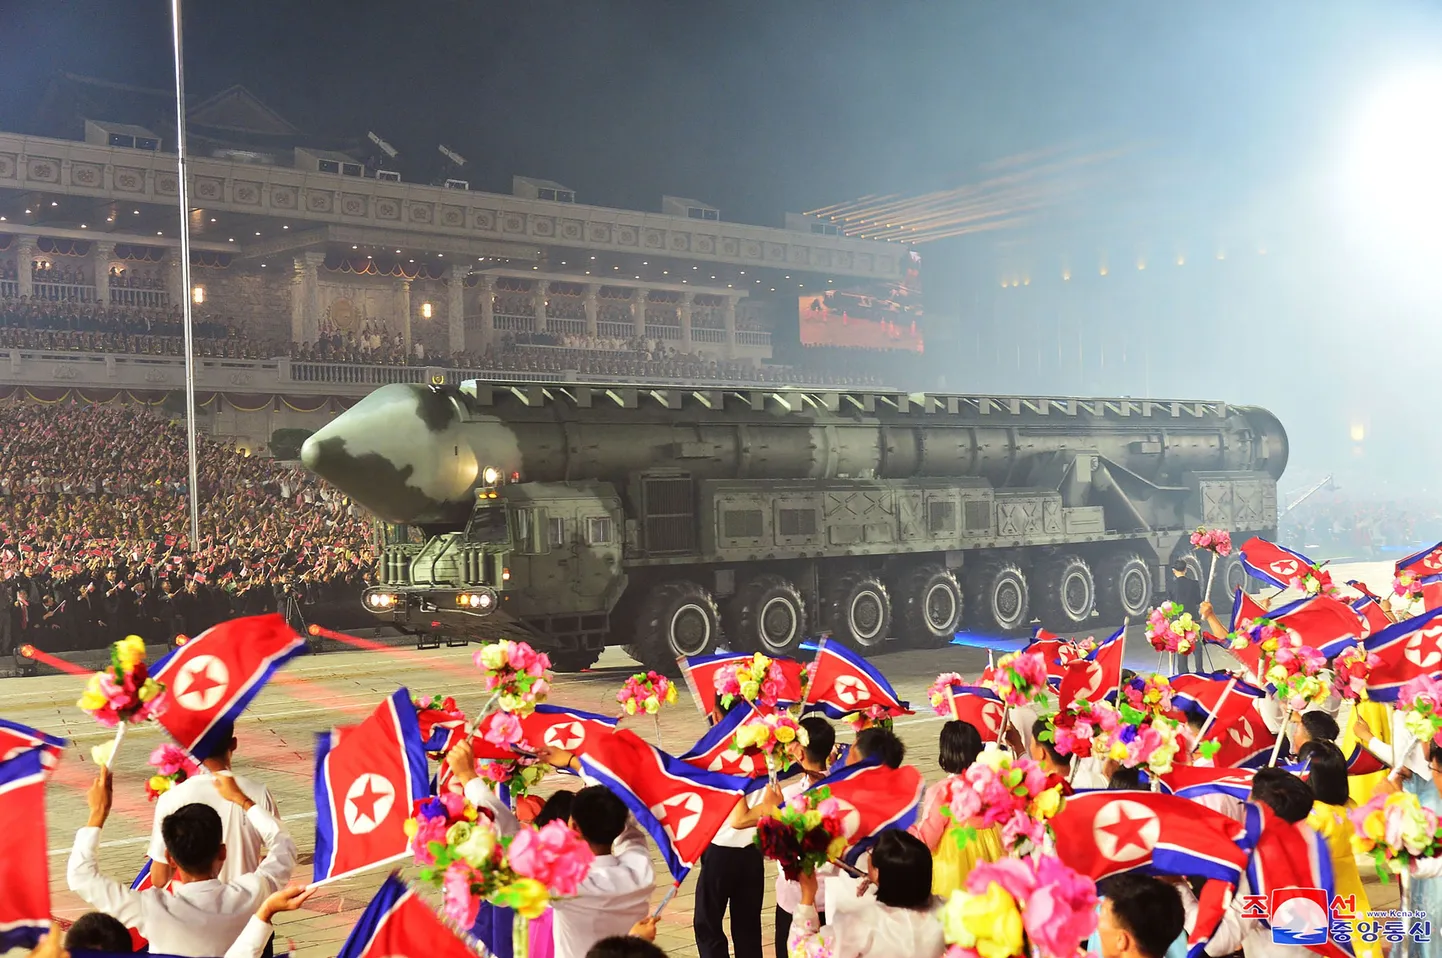 Põhja-Korea mandritevaheline ballistiline rakett (ICBM) sõjaväeparaadil. Foto on illustratiivne.